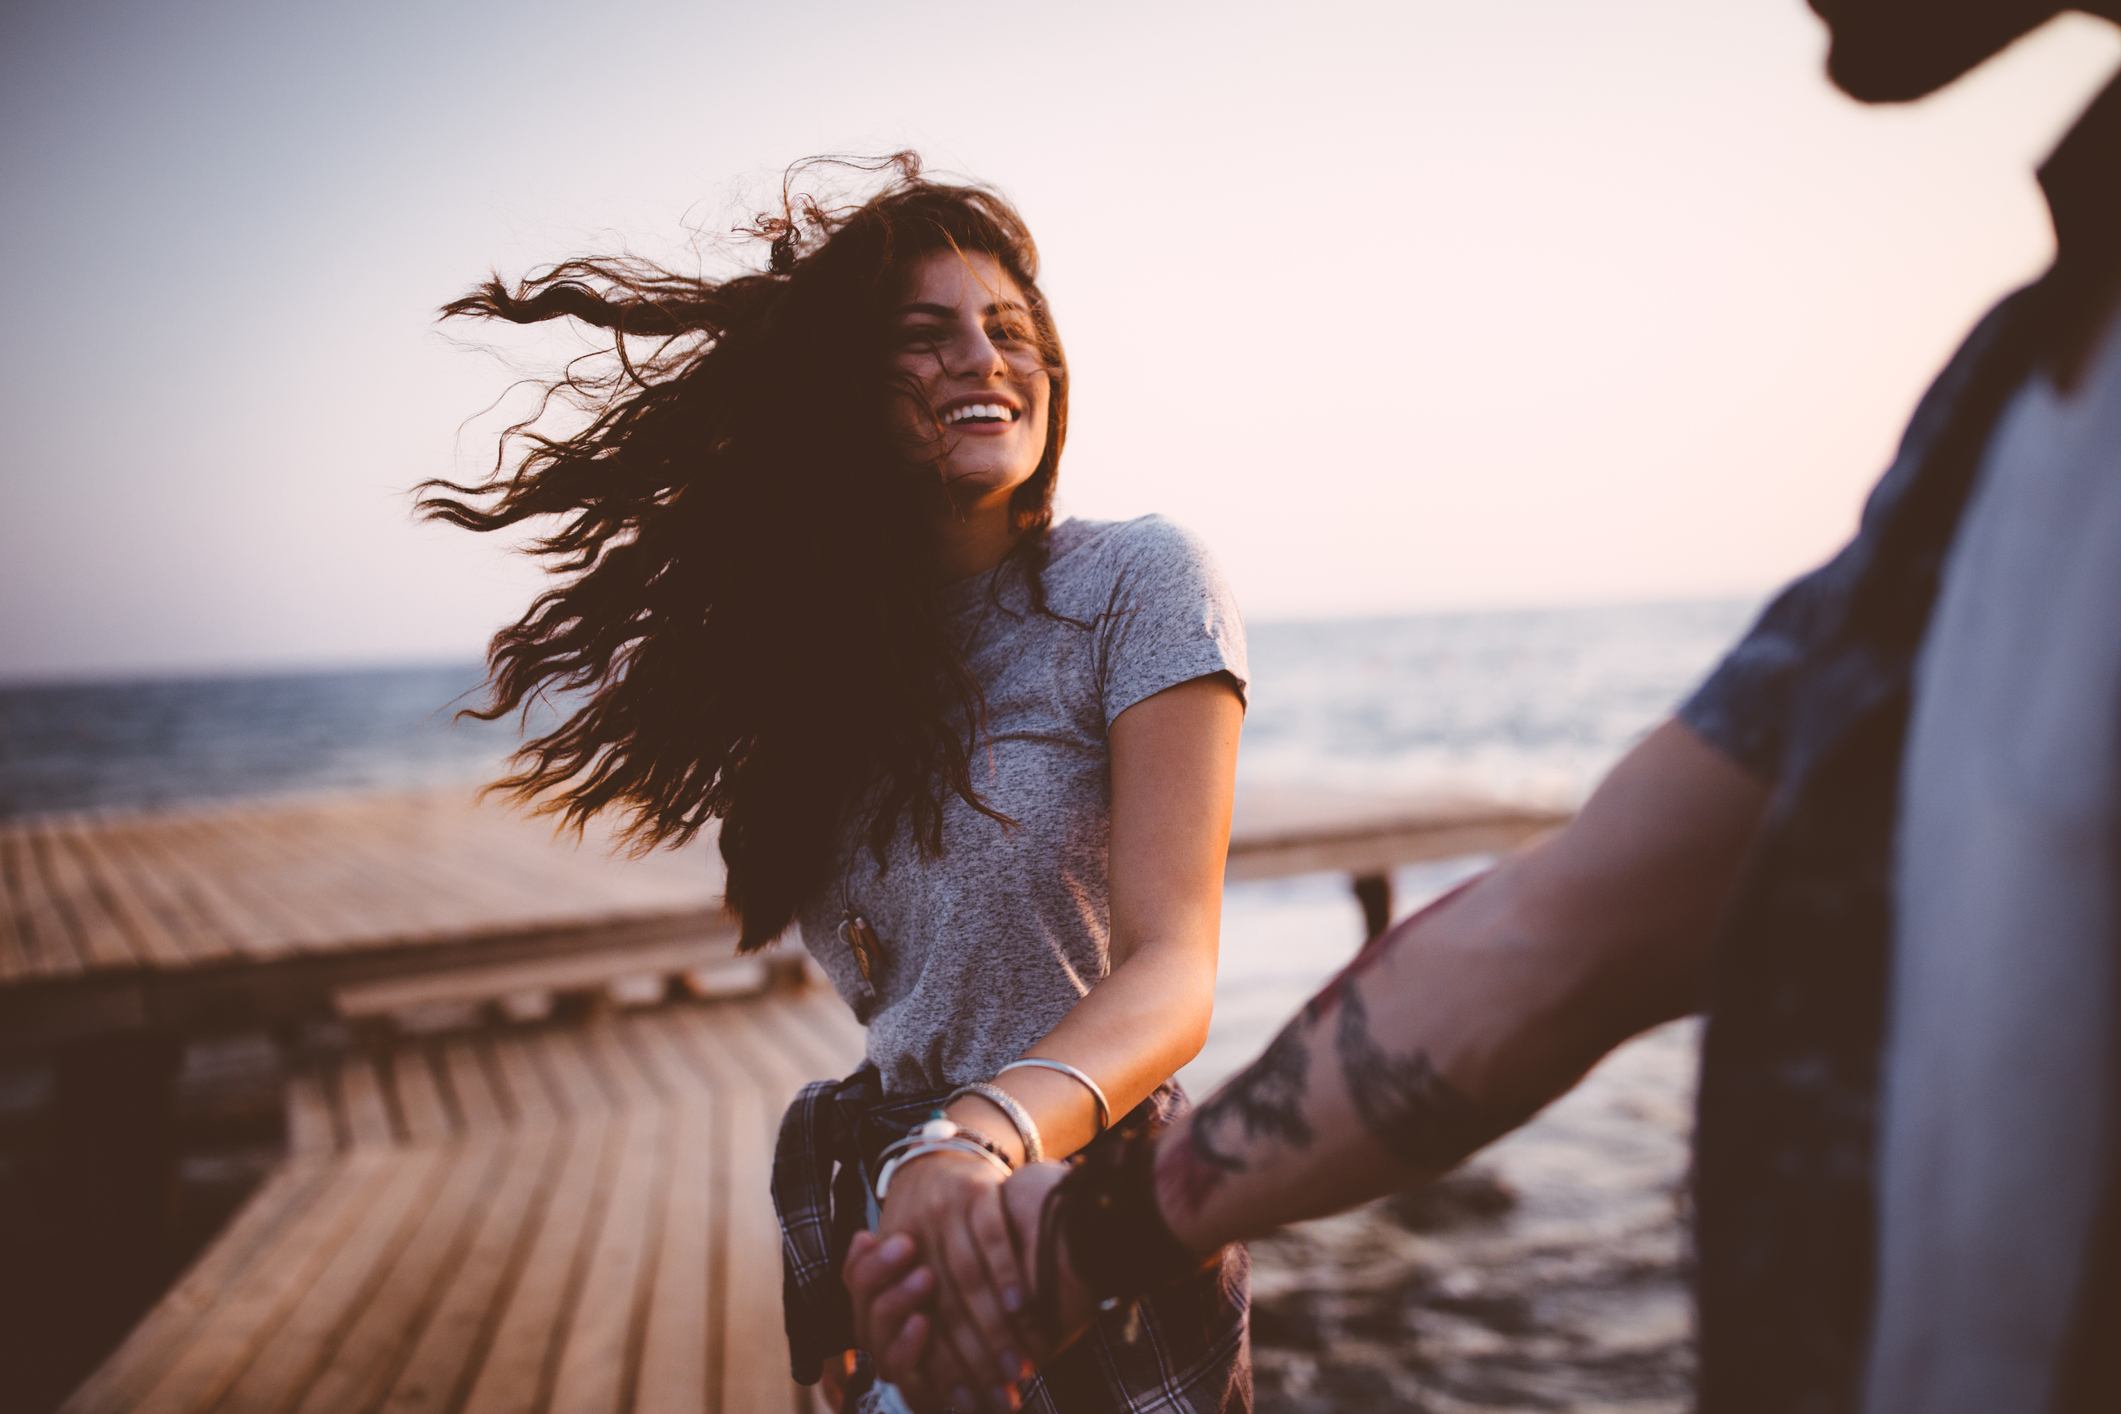 10 σημάδια που δείχνουν ότι έχεις μια πολύ ουσιαστική (οπότε και όμορφη) σχέση